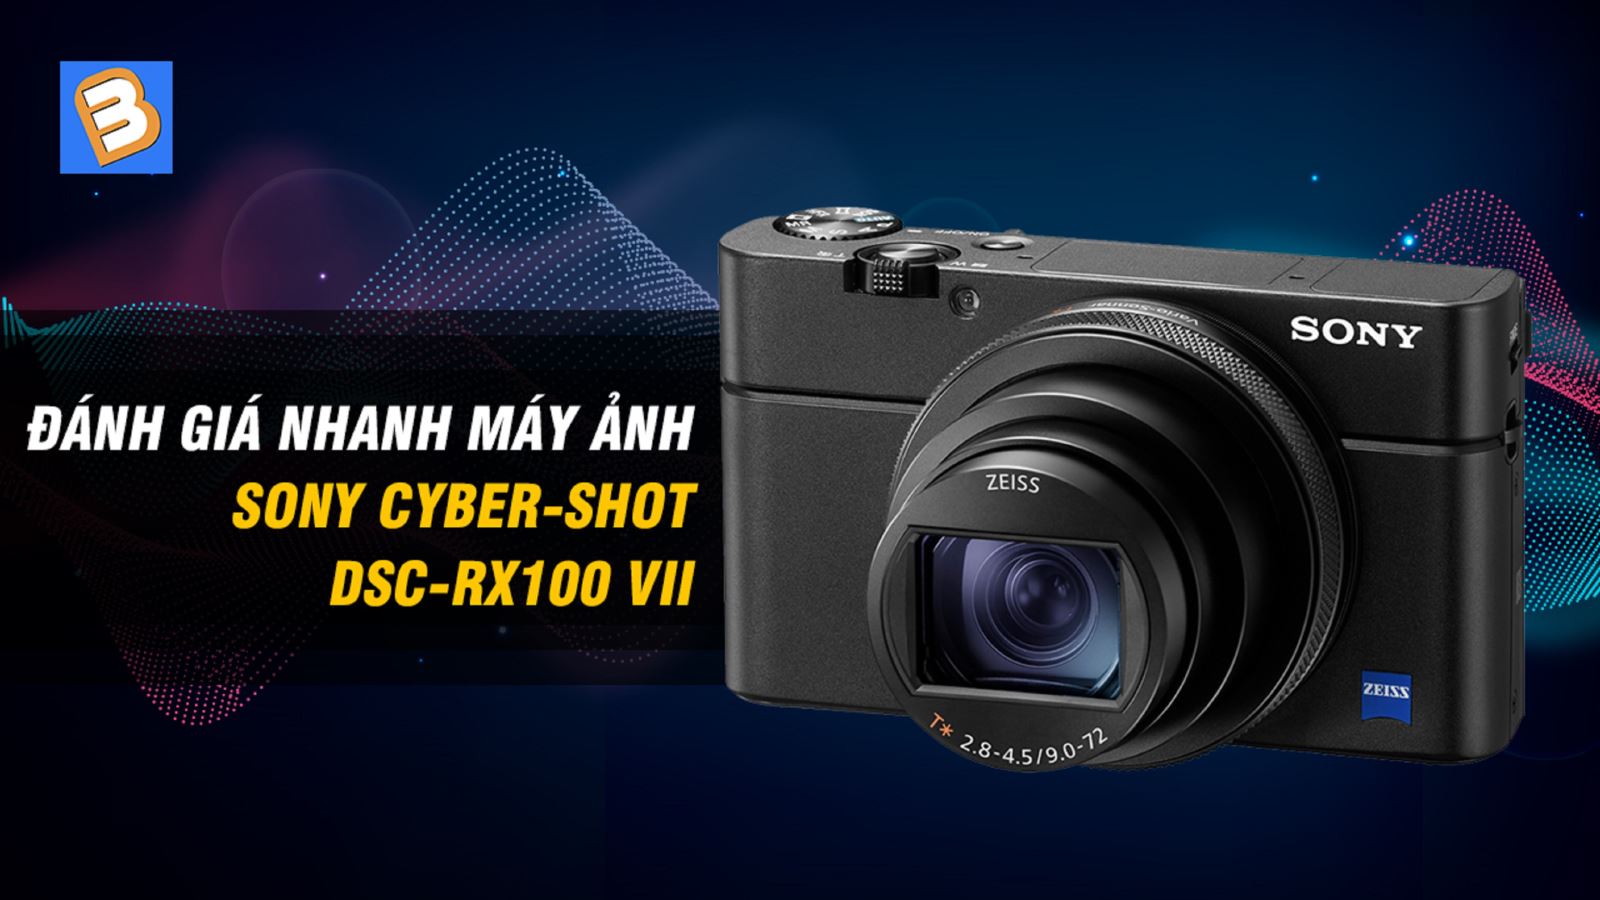 Đánh giá nhanh máy ảnh Sony Cyber-shot DSC-RX100 VII